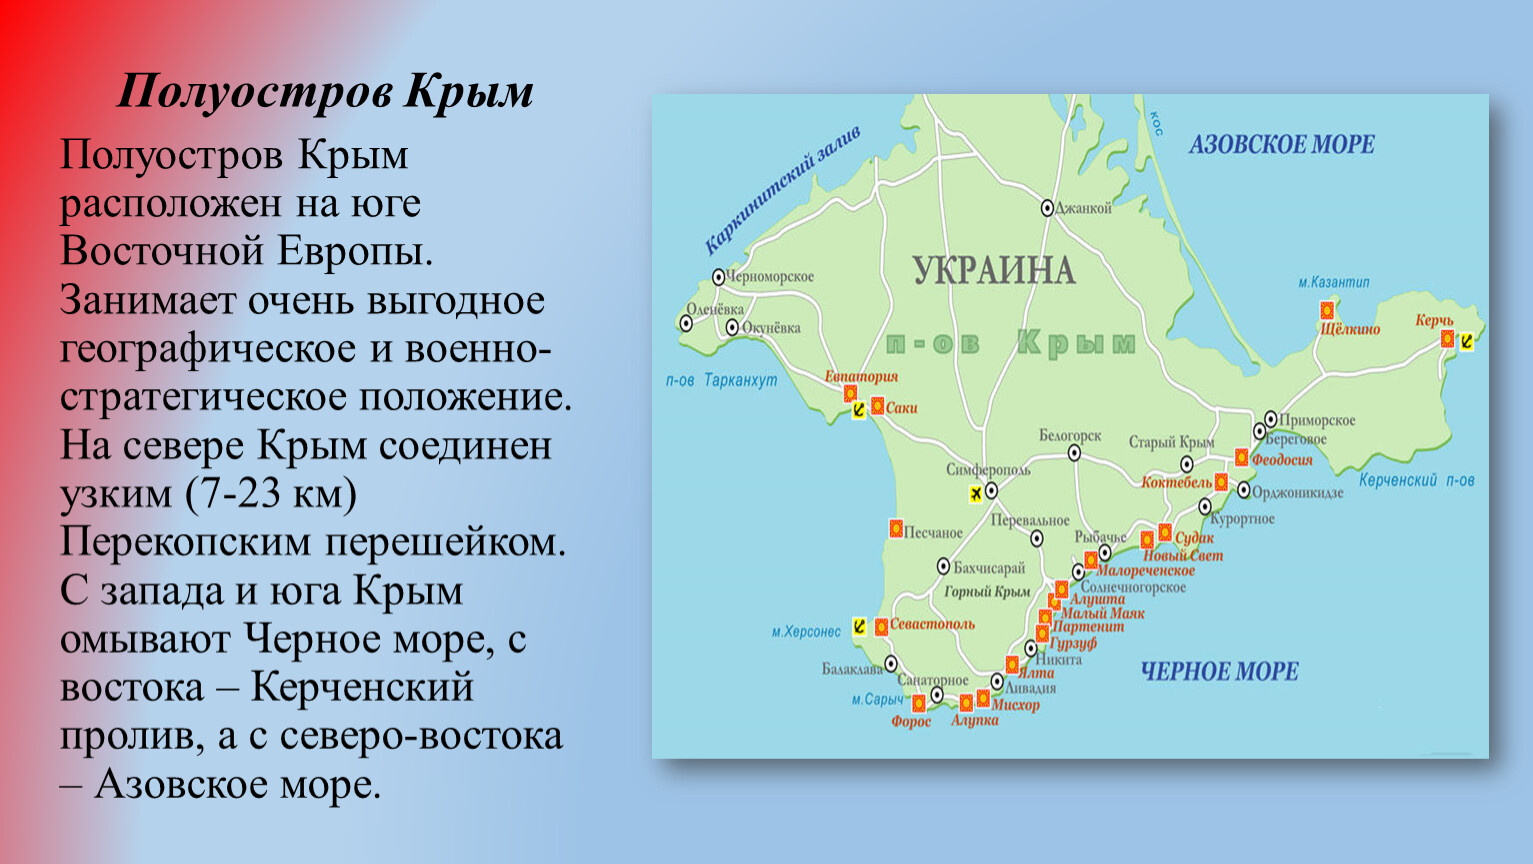 Географическое положение полуострова Крым